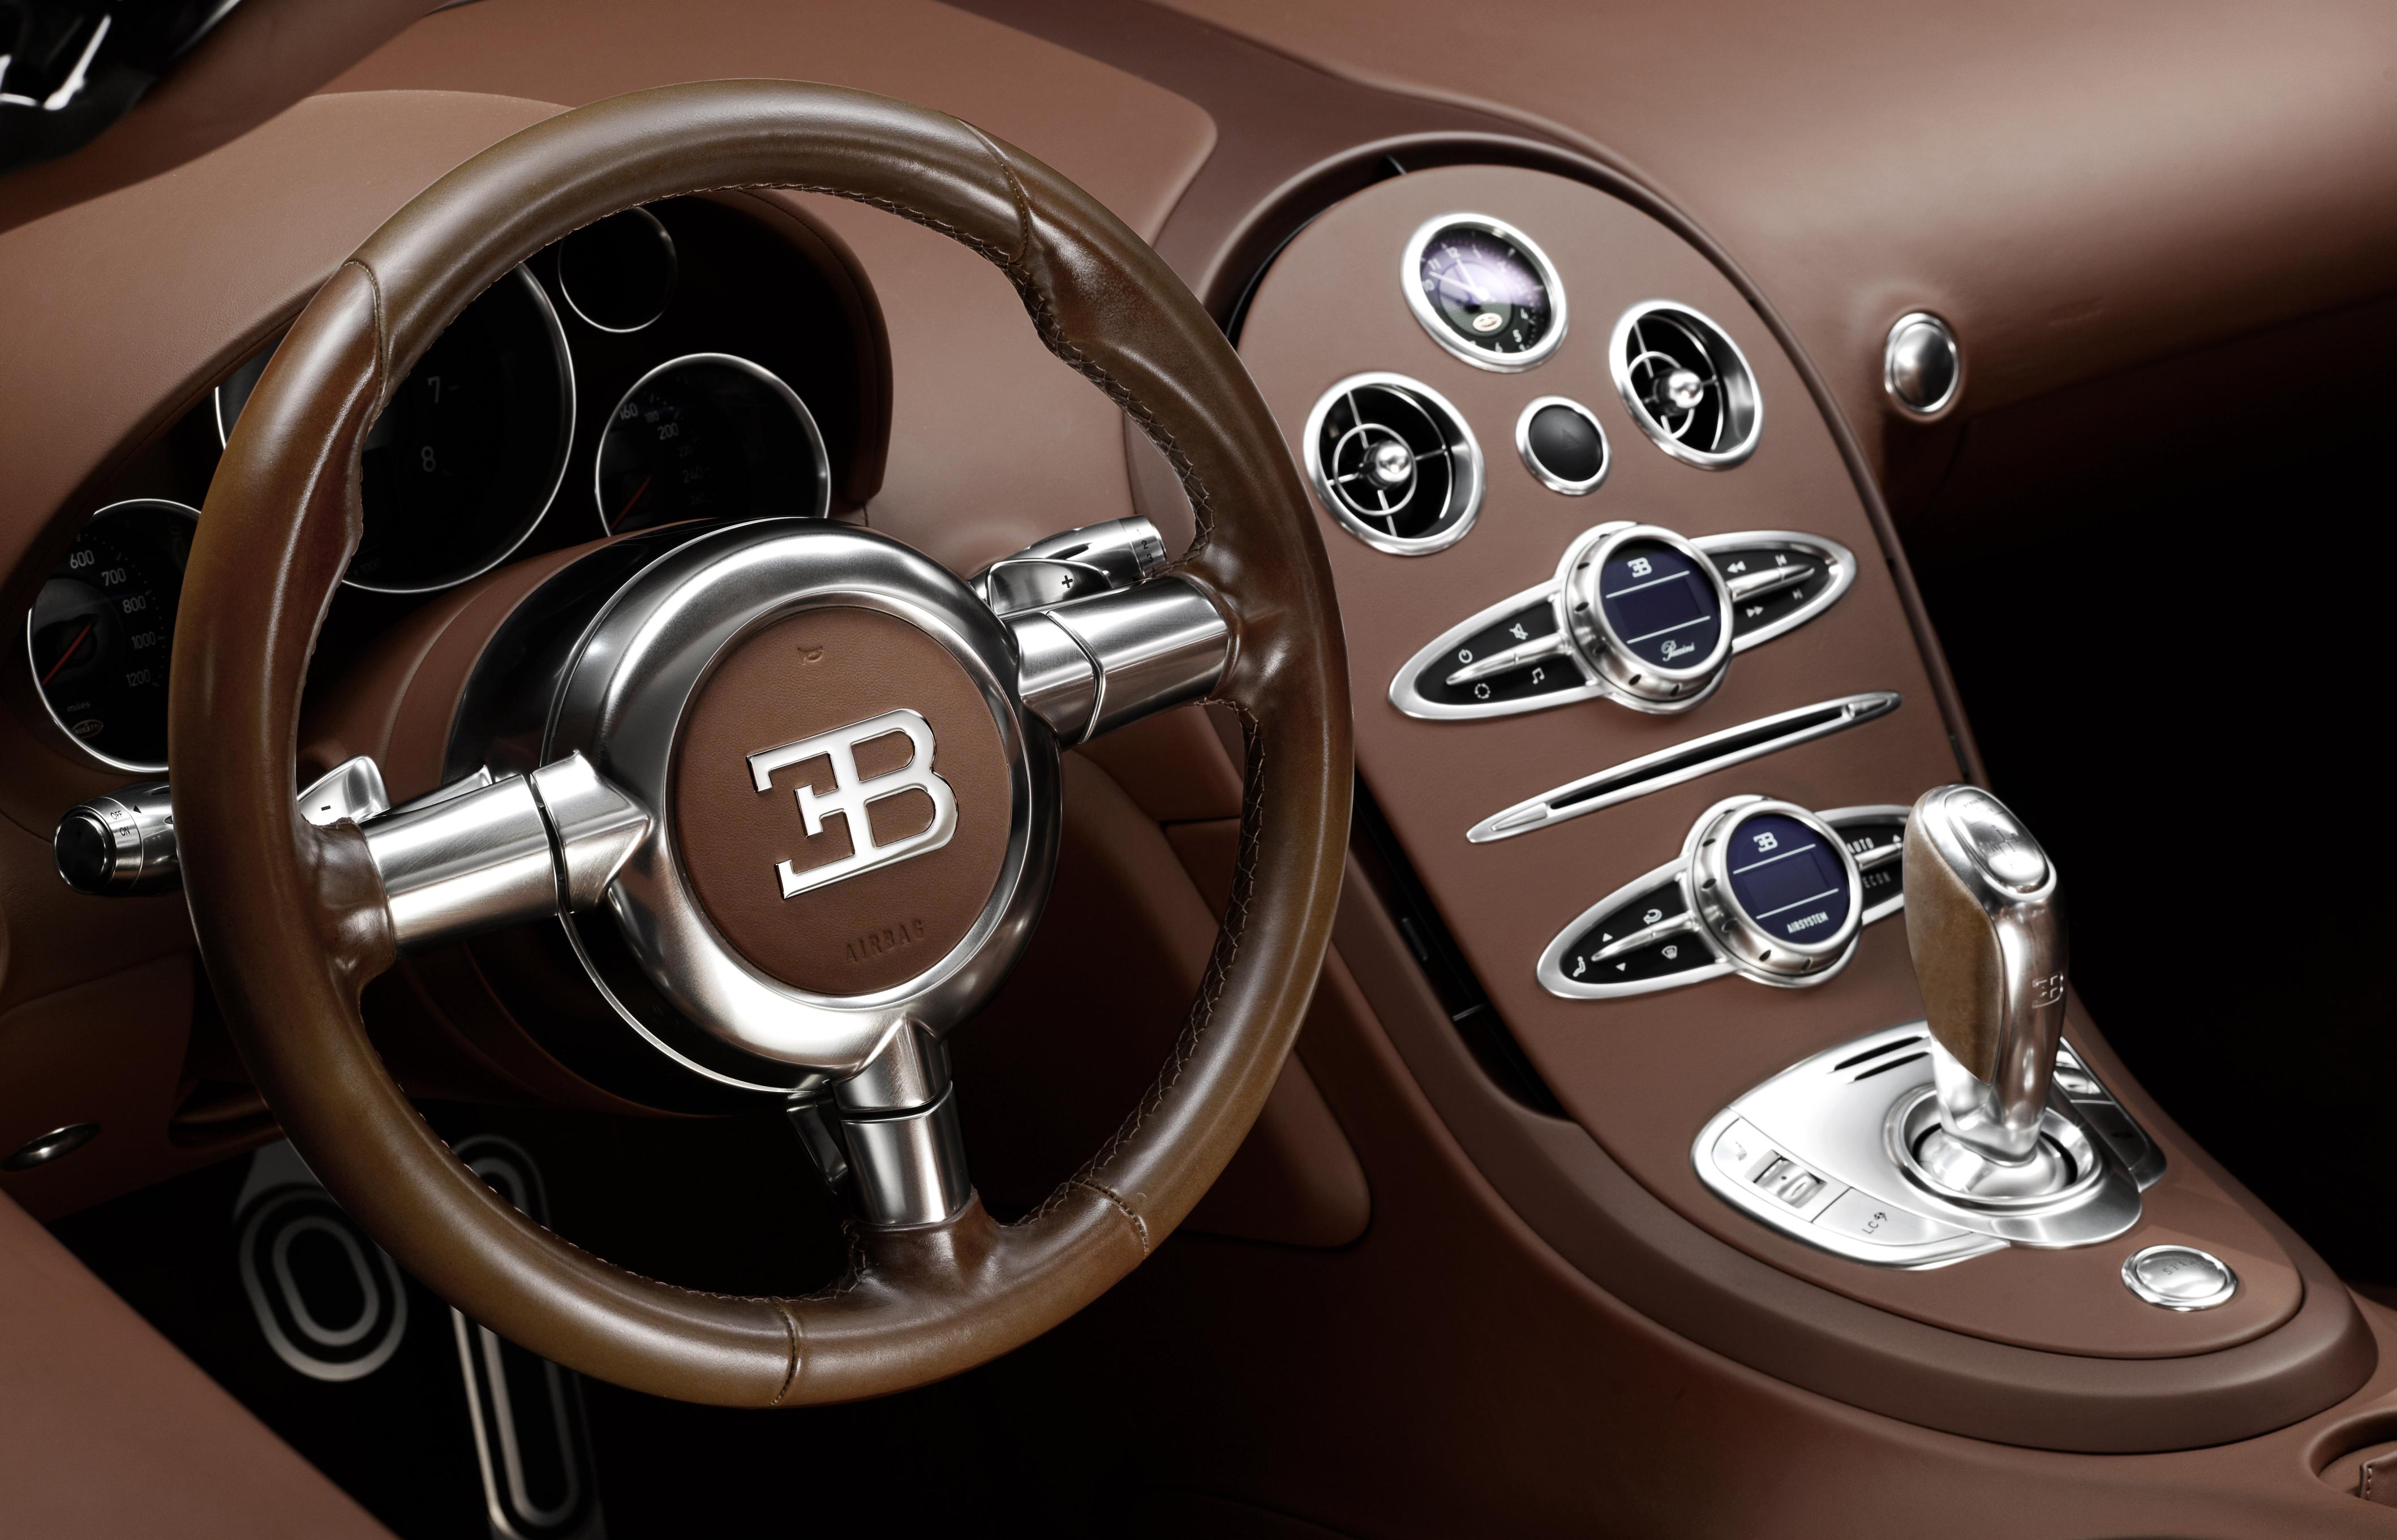 012_Legend_Ettore_Bugatti_Steering_Wheel_Centre_Console